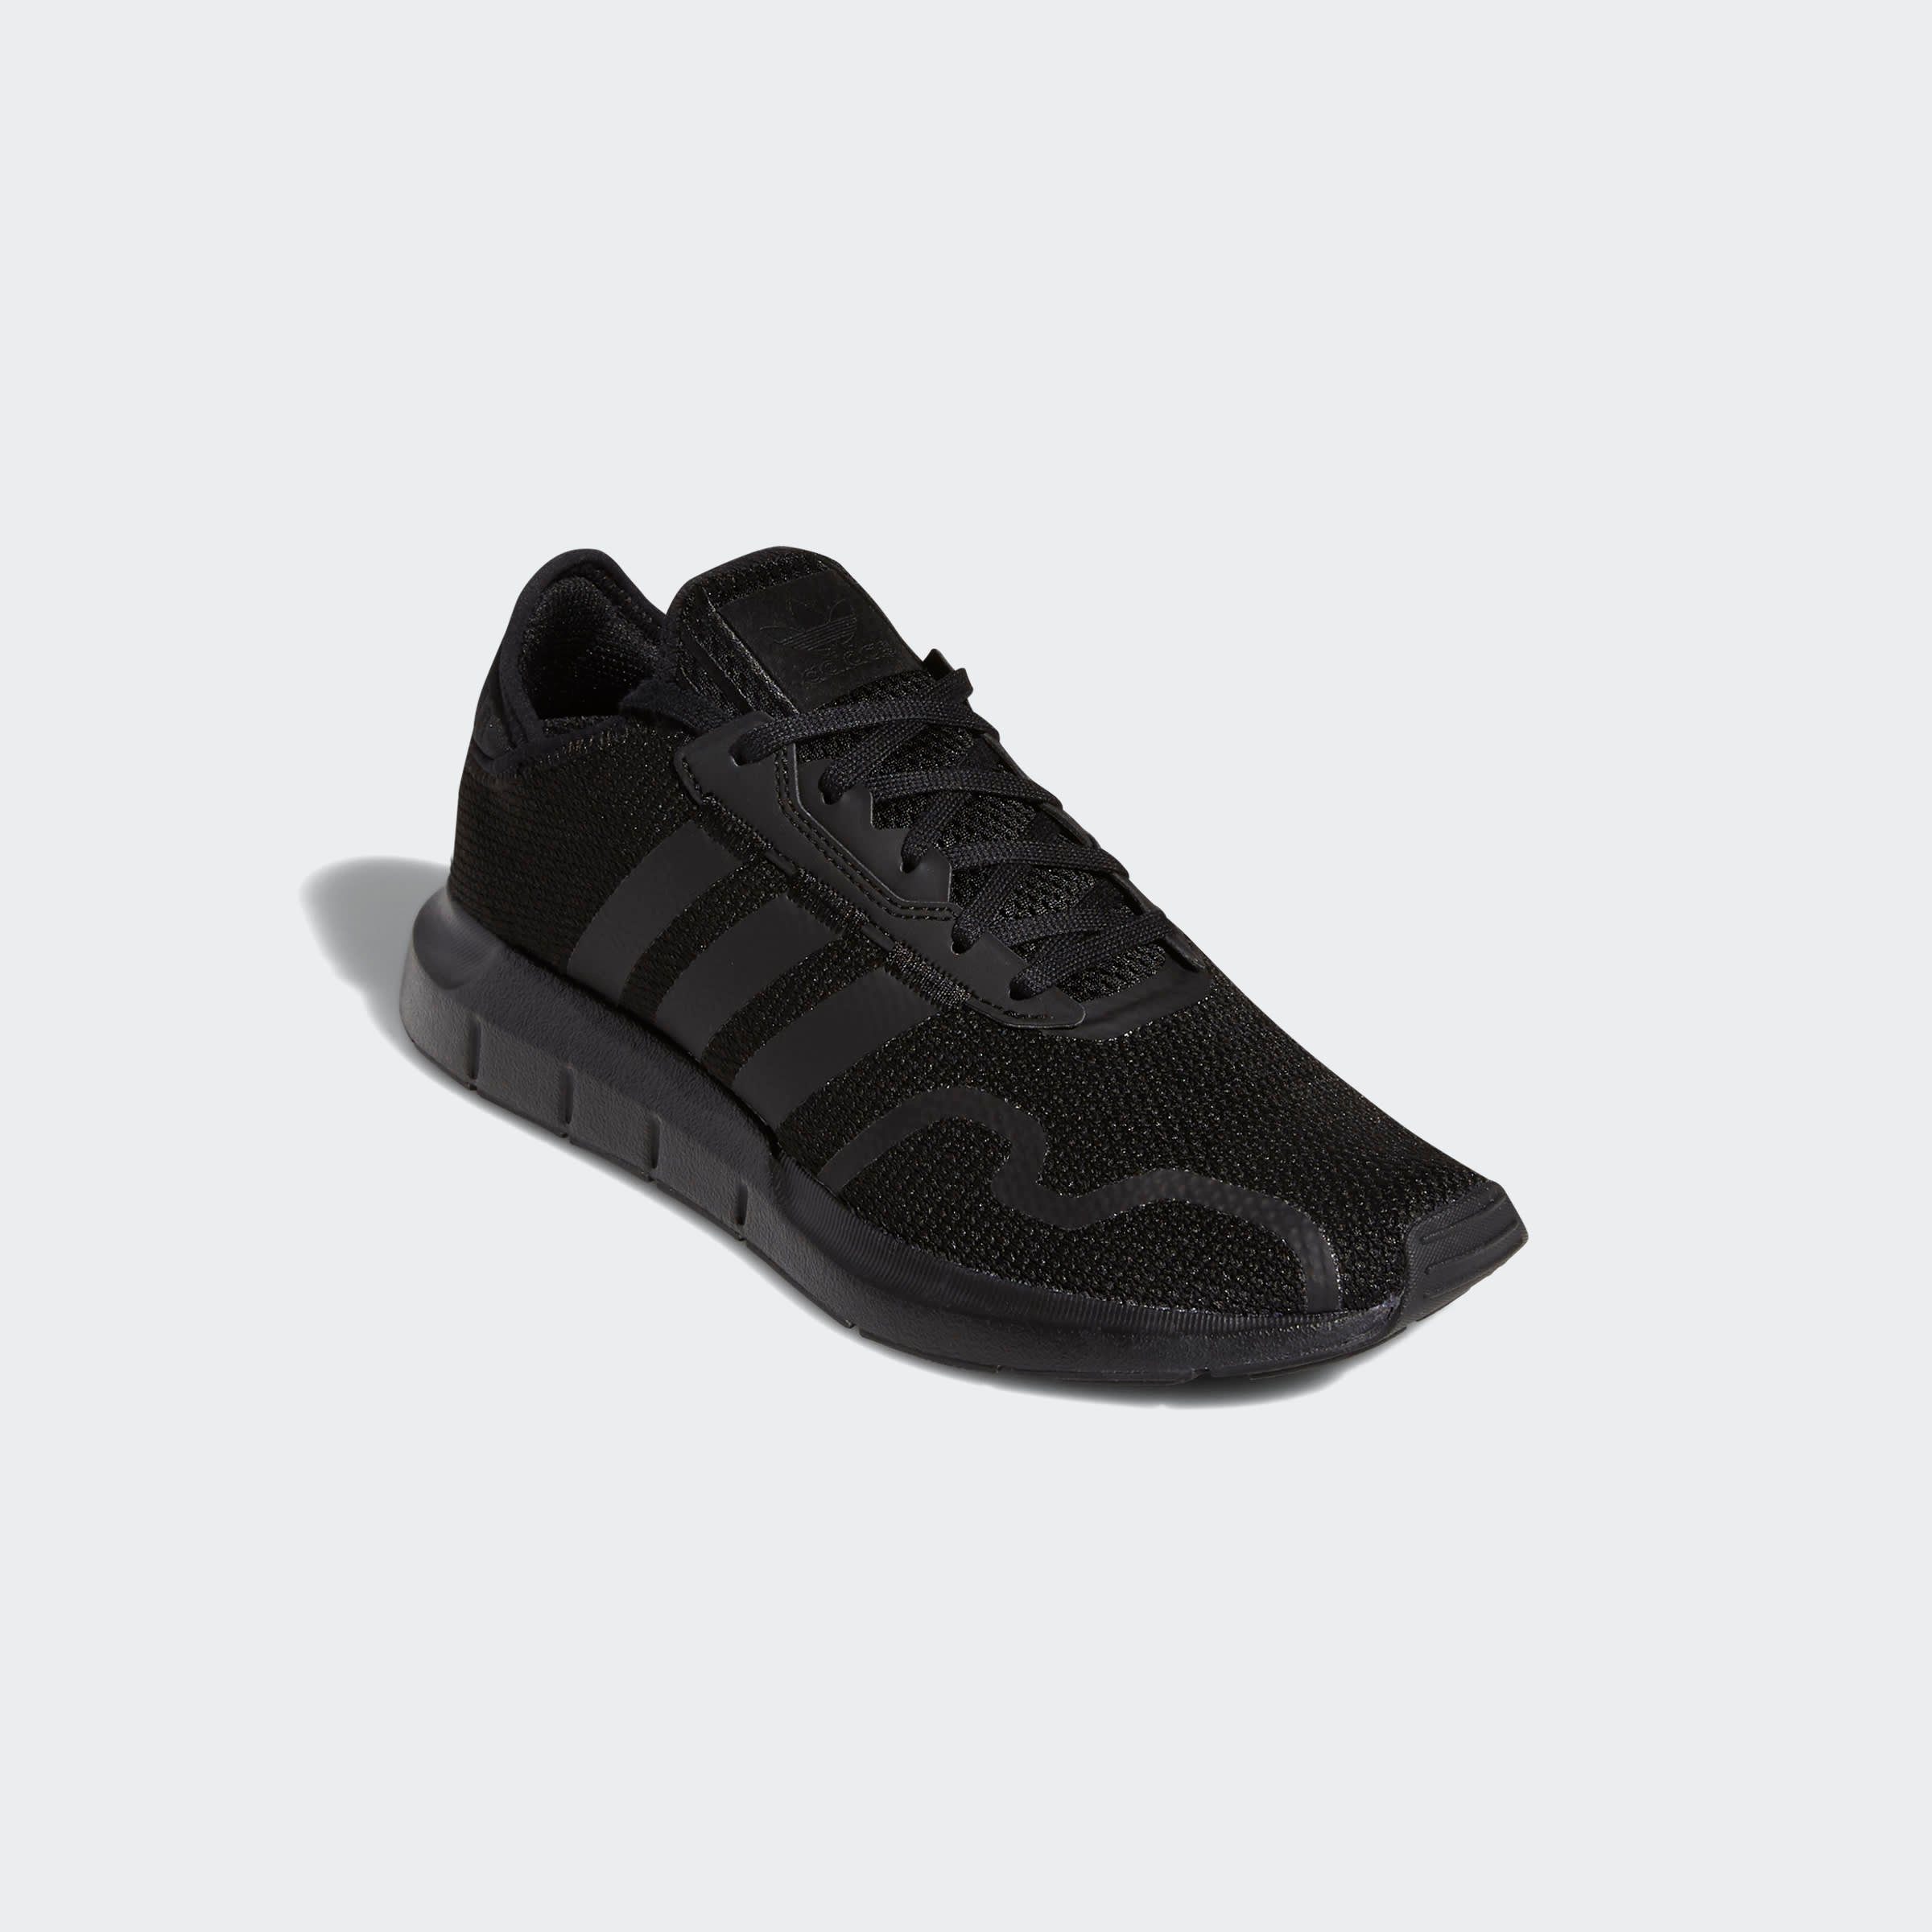 adidas Originals »SWIFT RUN X« Sneaker kaufen | OTTO